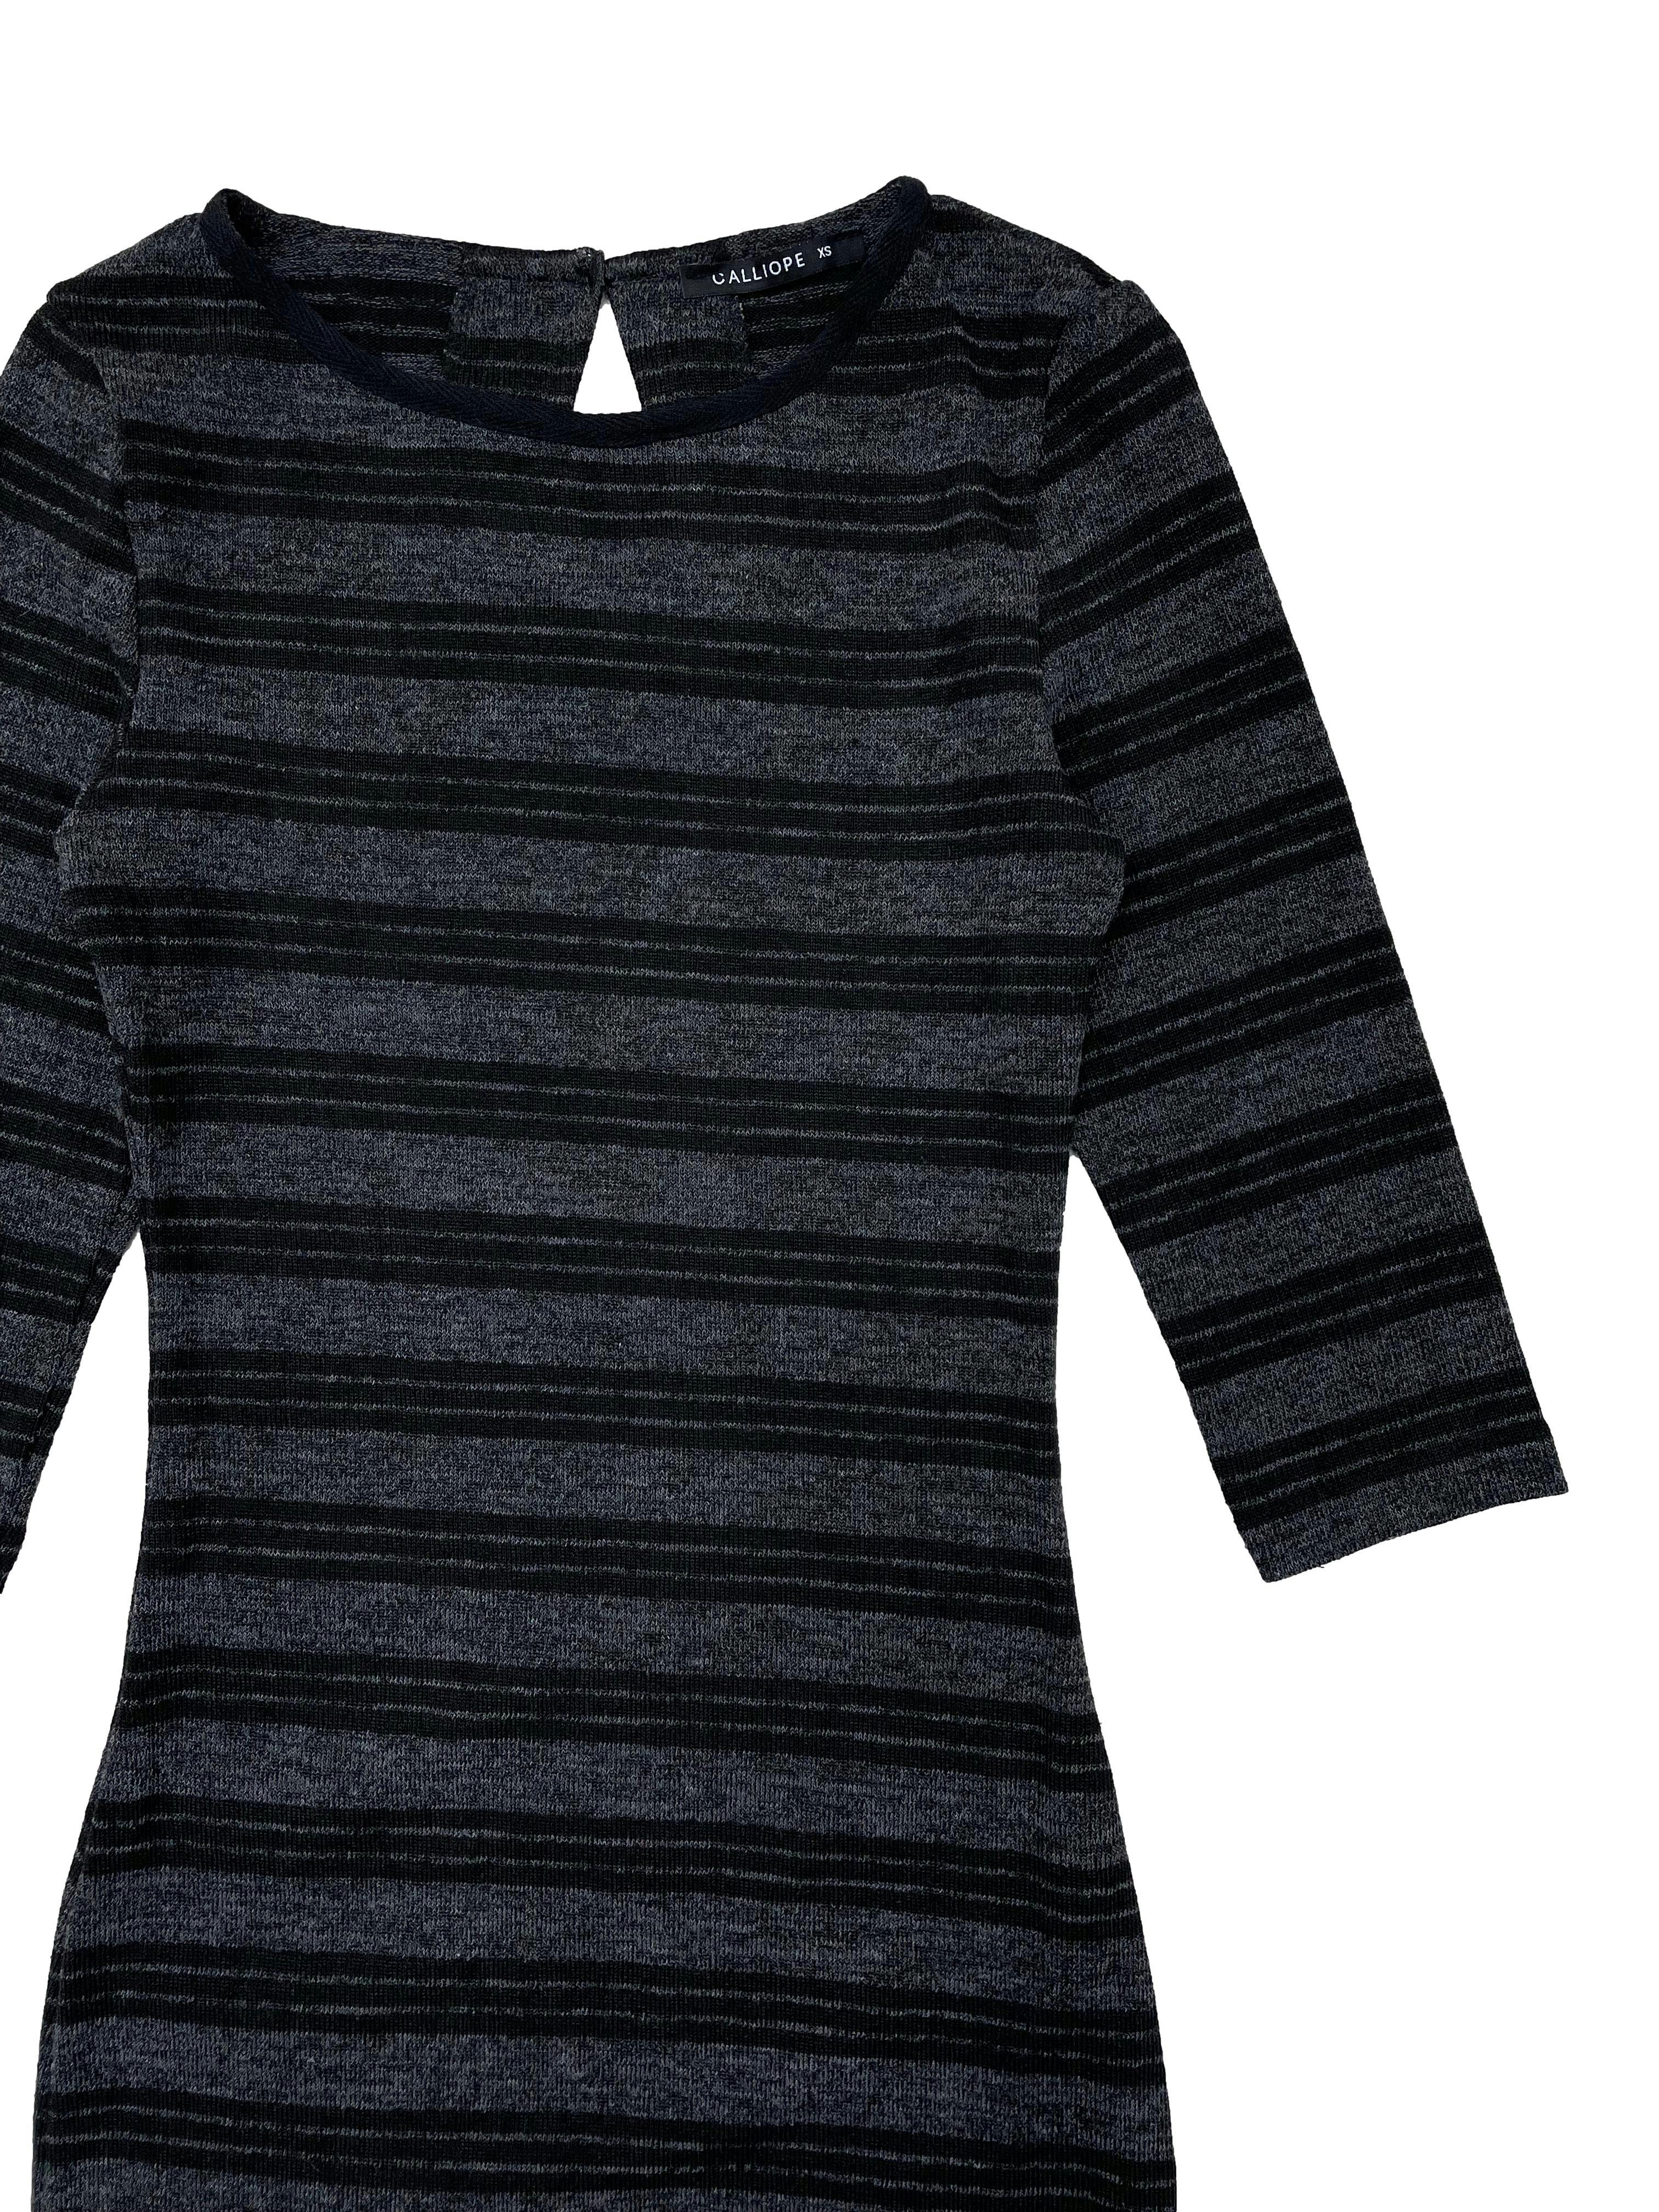 Vestido knit plomo con rayas negras, mangas 3/4 y abertura posterior con botón. Busto 66cm sin estirar, Largo 105cm.